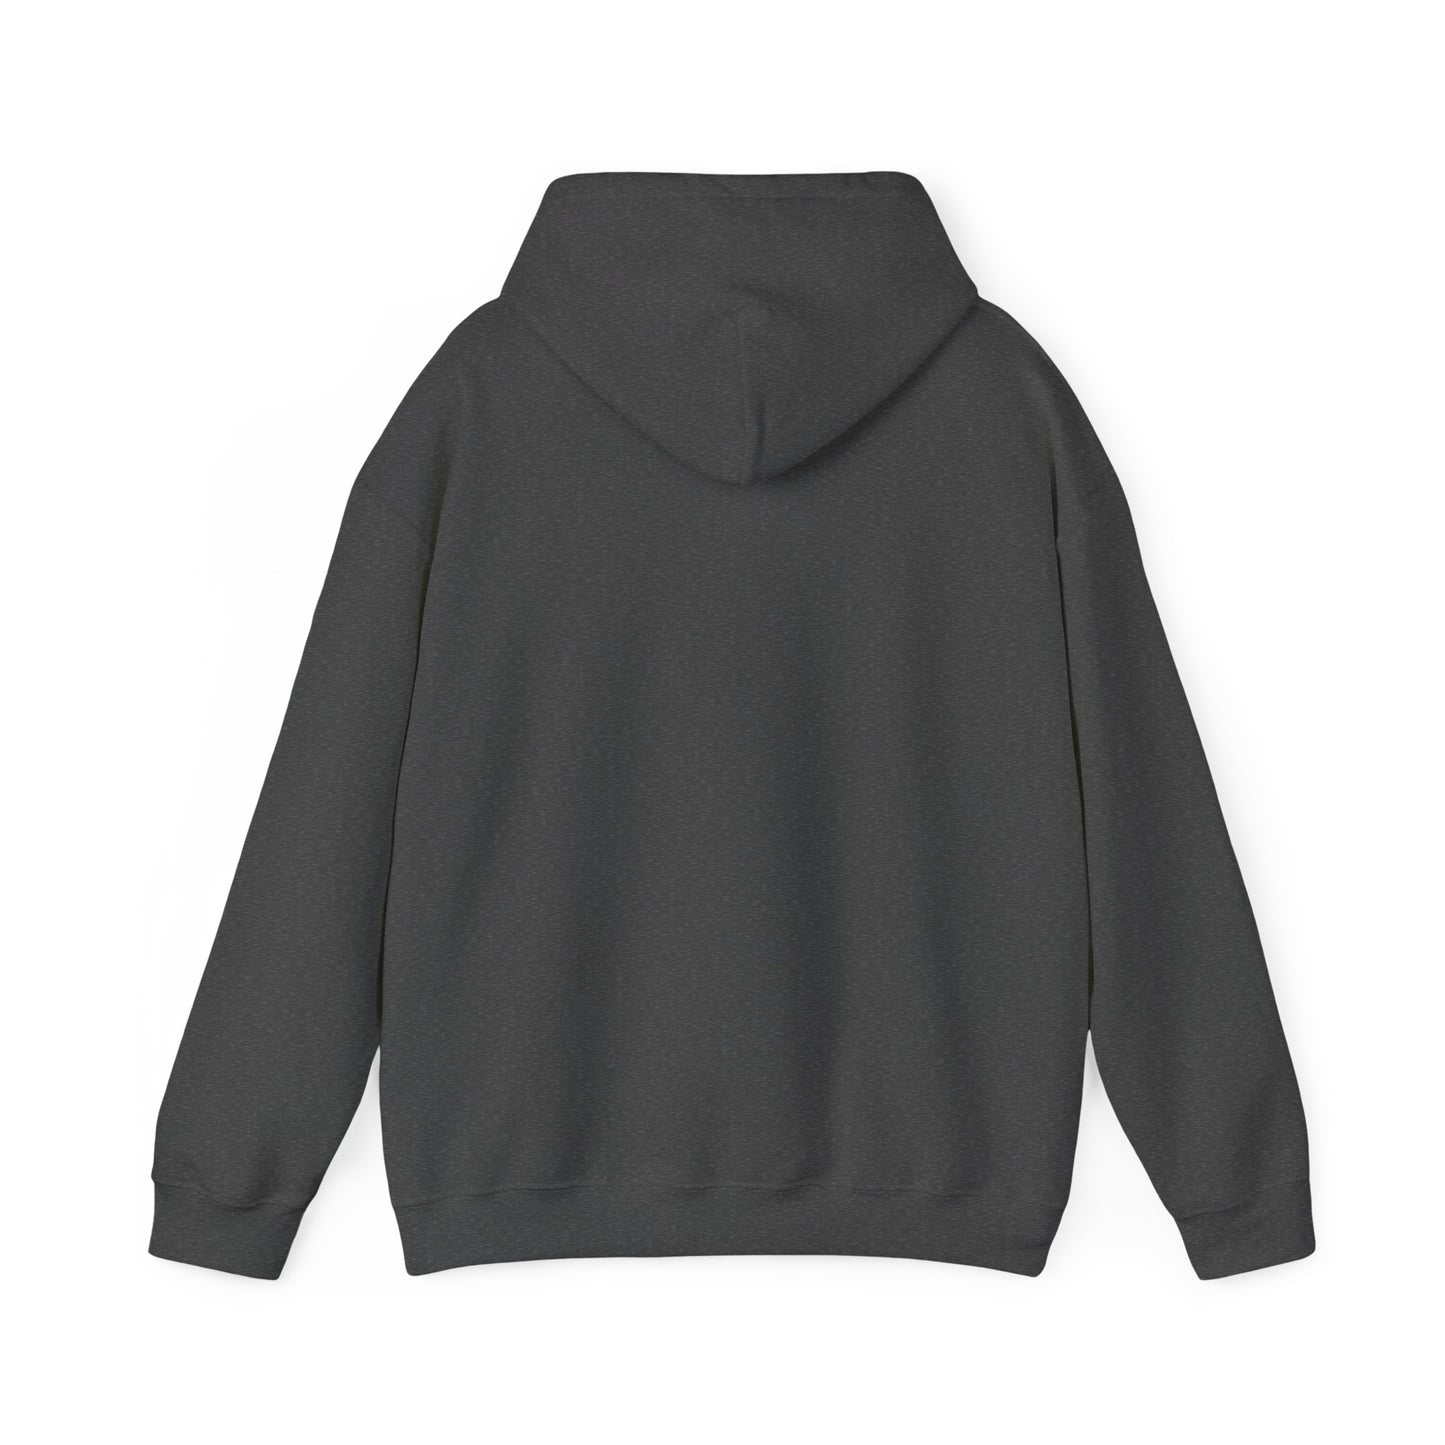 "BUSINESS MODEL" Hoodie! - Unisex Heavy Blend™ Hooded Sweatshirt